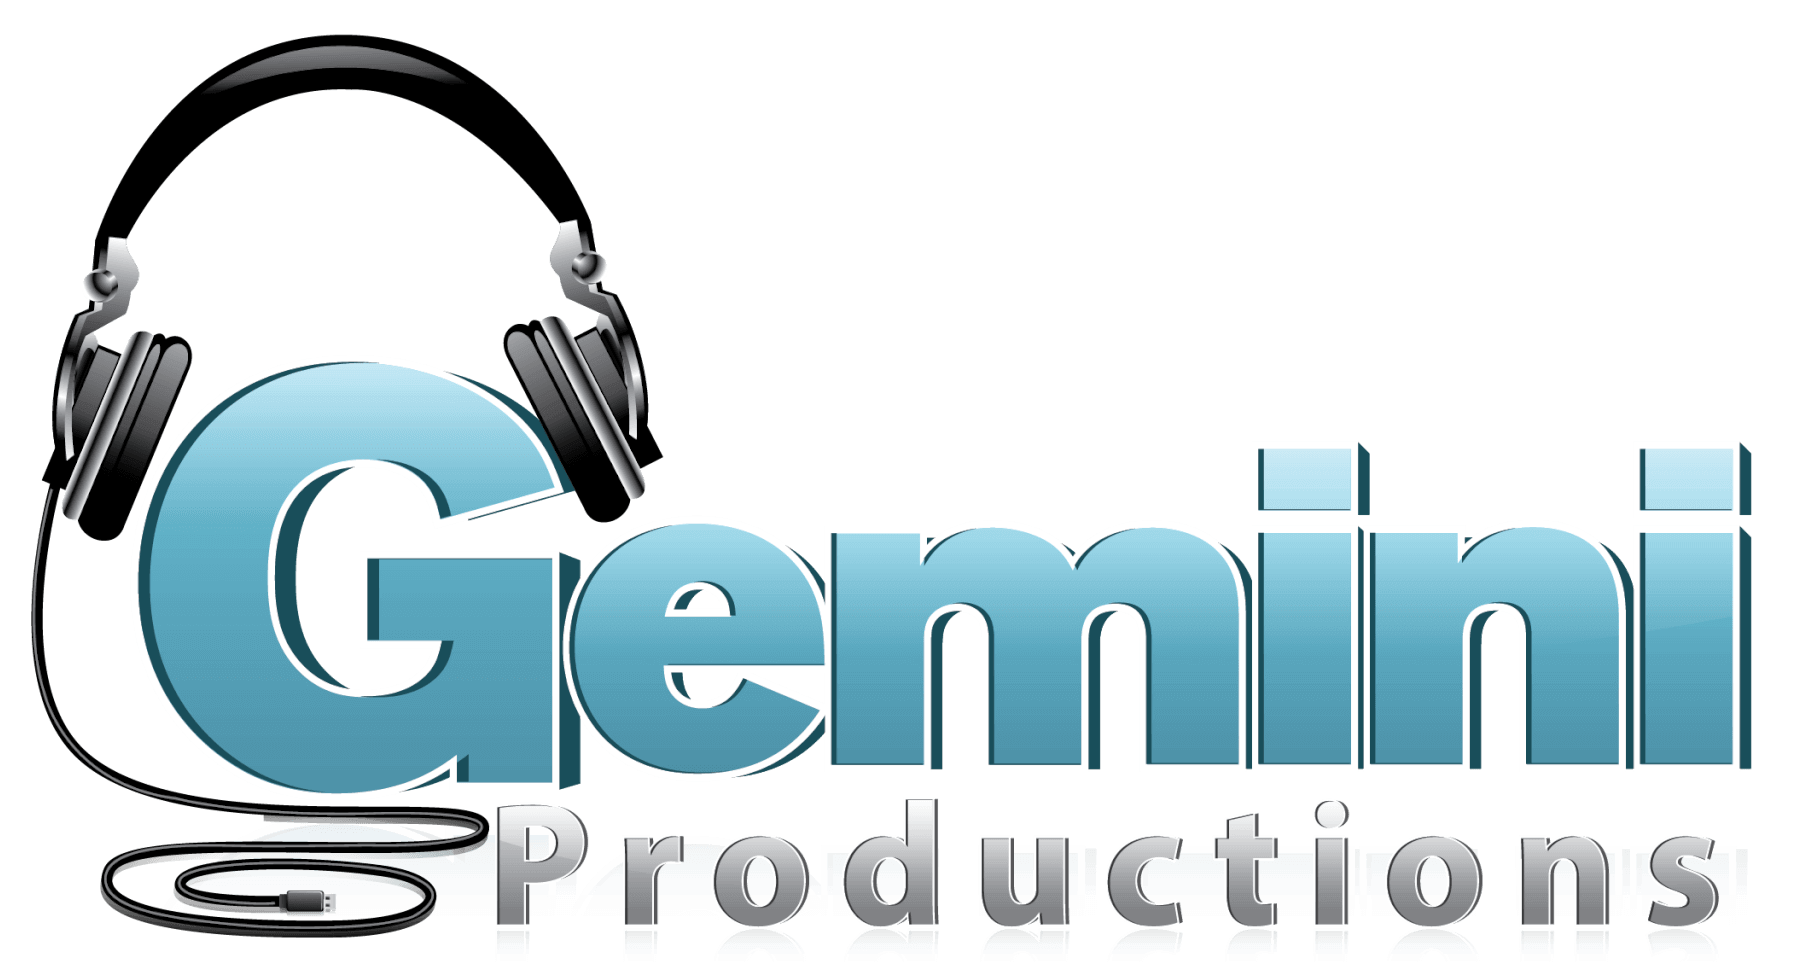 Gemini Productions.